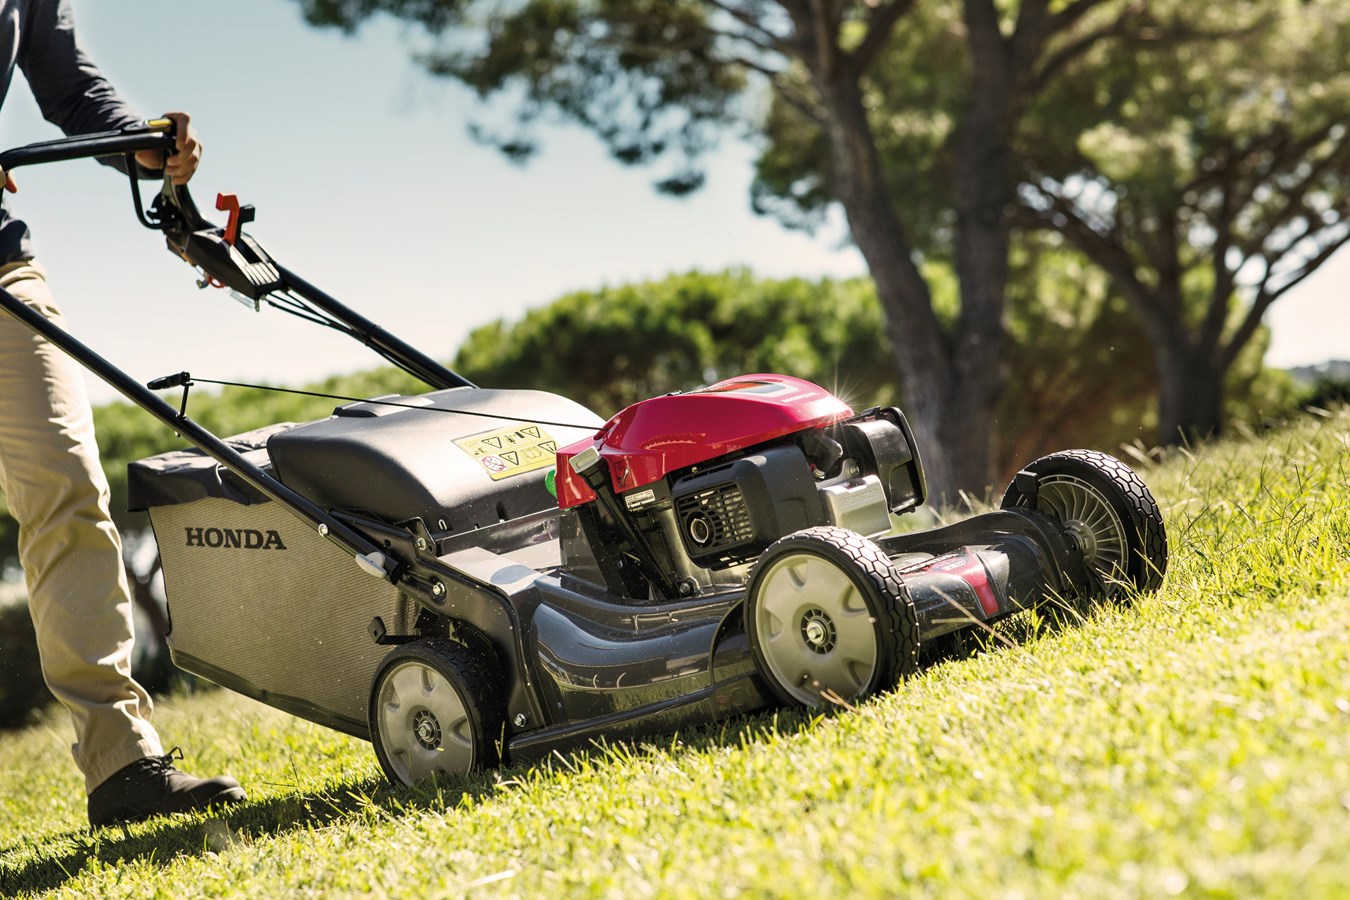 Honda Announces New Engines and Design Updates for Premium HRX Lawn Mower Range